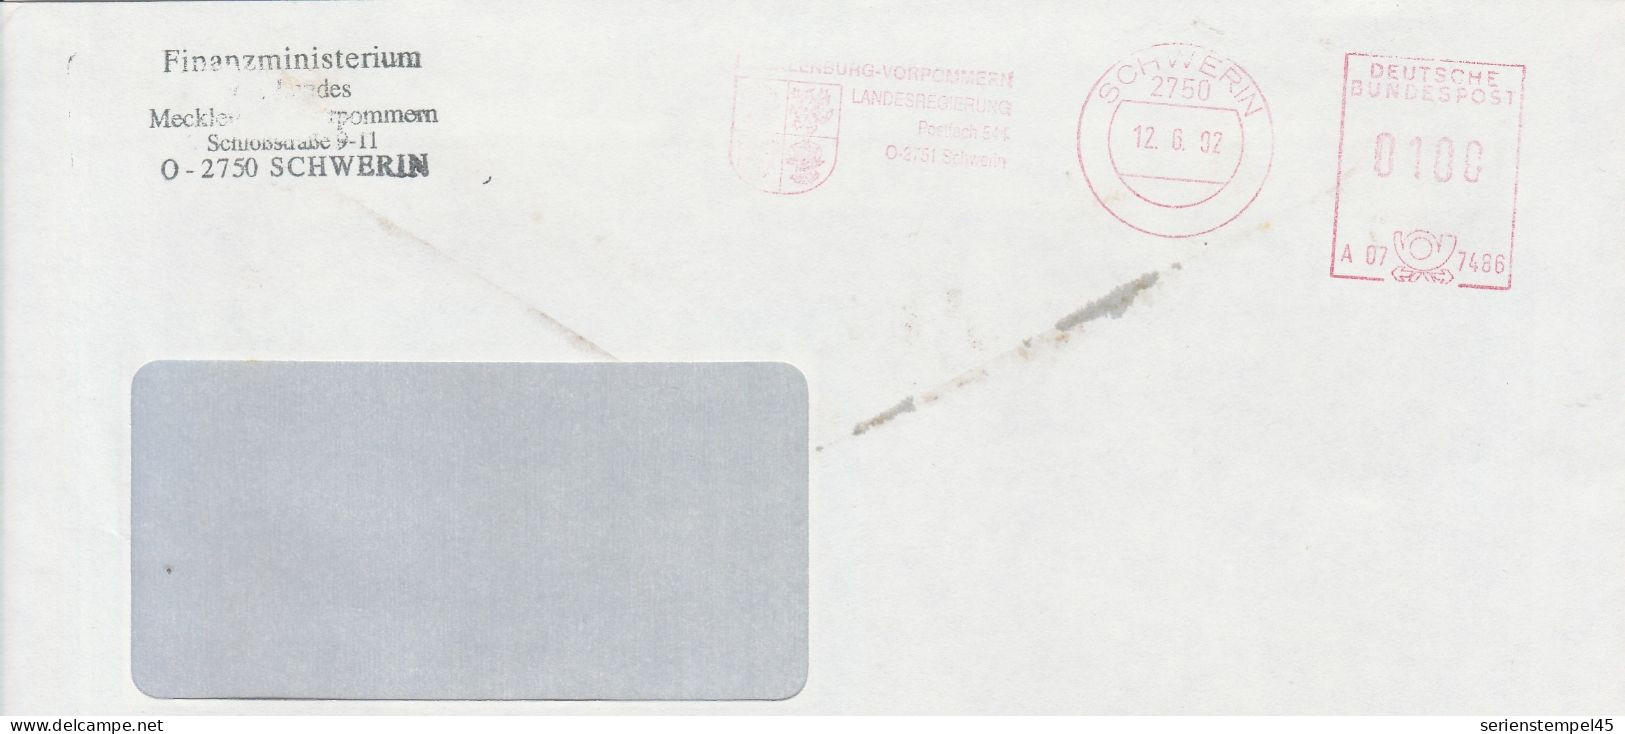 Deutsche Bundespost Brief Mit Freistempel VGO PLZ Oben Schwerin 1992 Finanzministerium A07 7486 - Máquinas Franqueo (EMA)